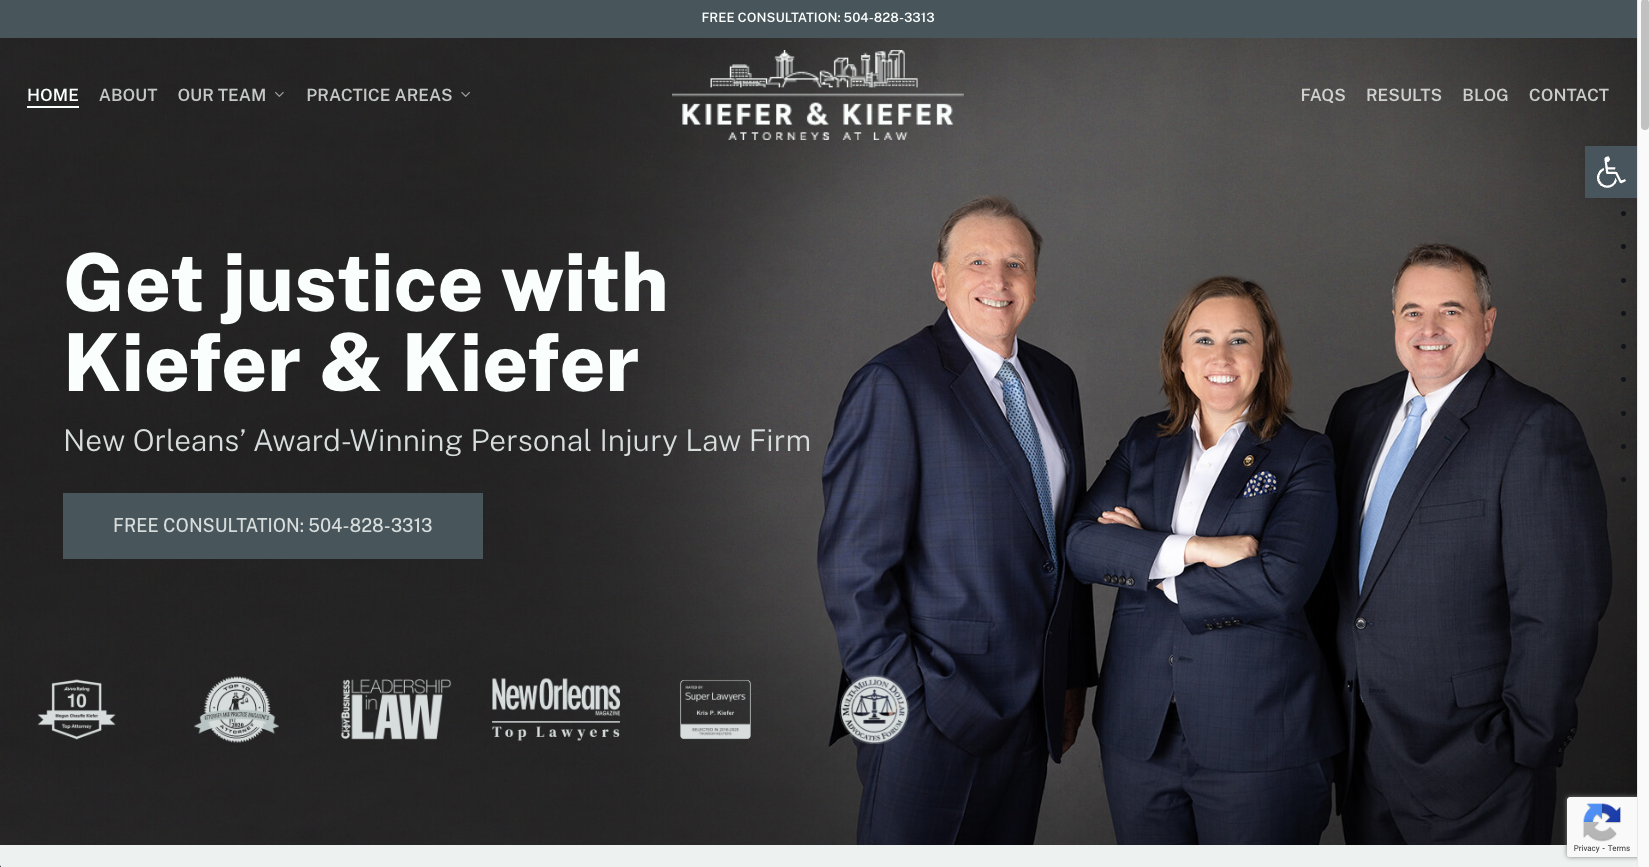 Vega Digital Awards Winner - Kiefer & Kiefer Attorneys at Law, Conversations, LLC